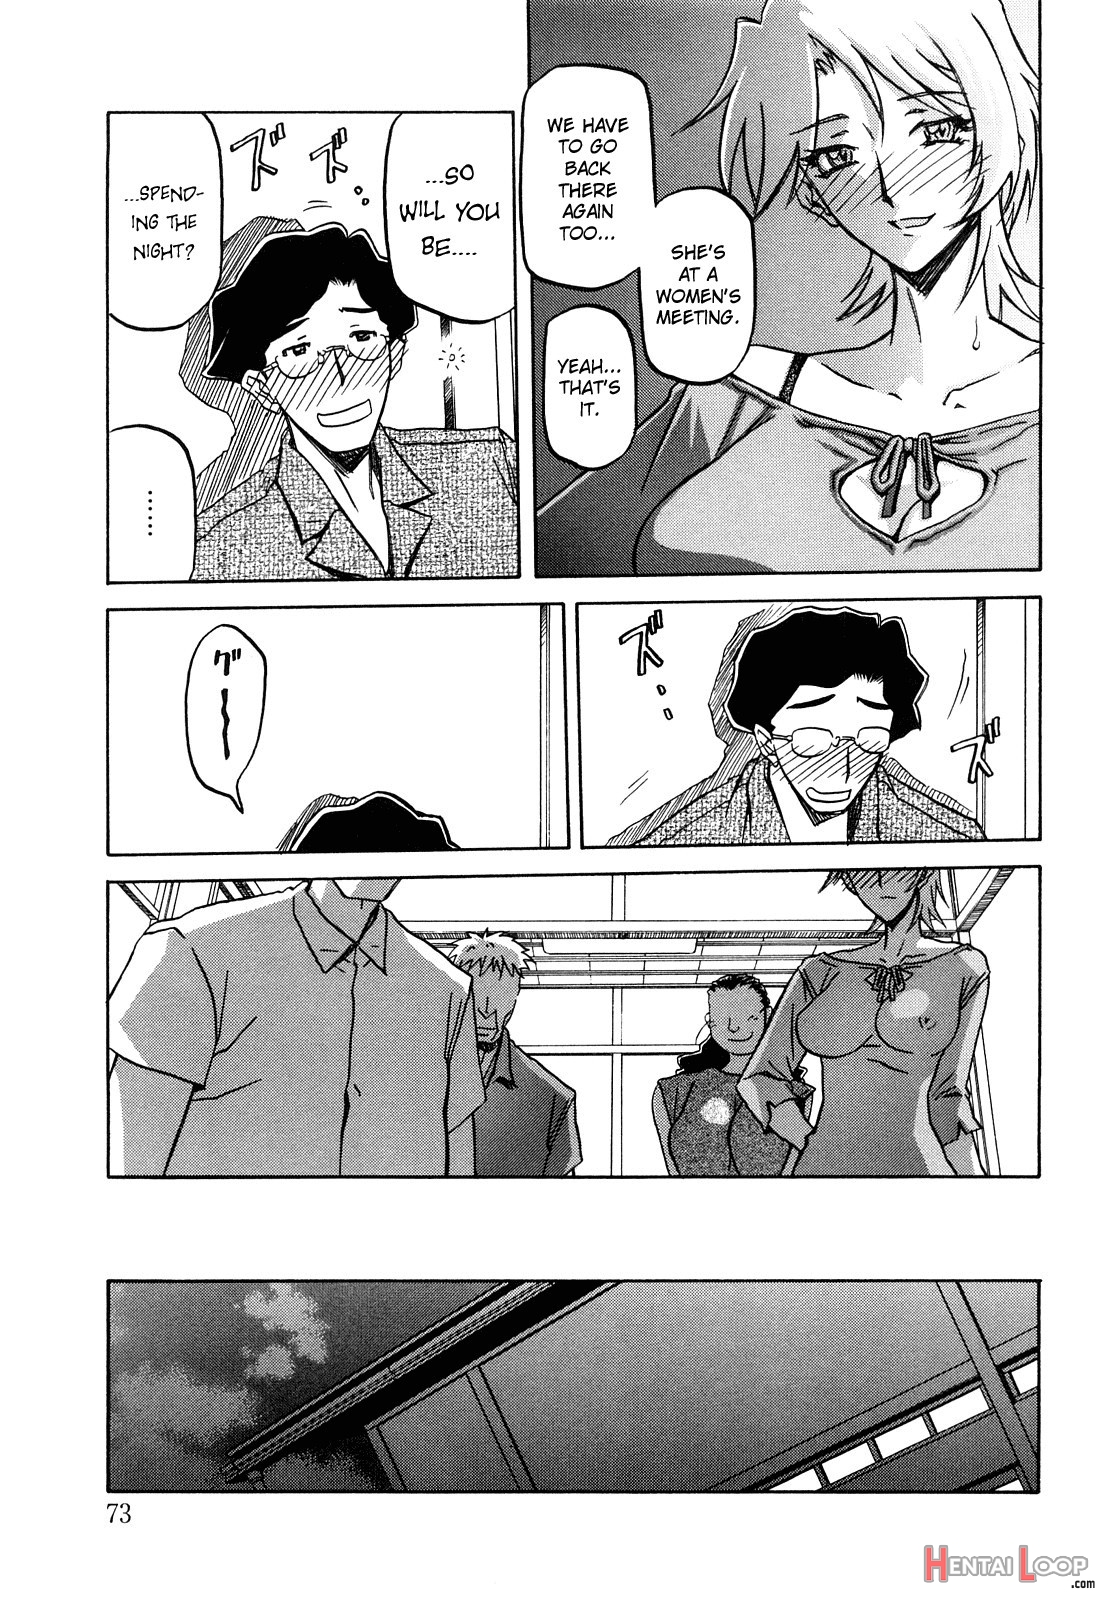 Sayuki No Sato page 72